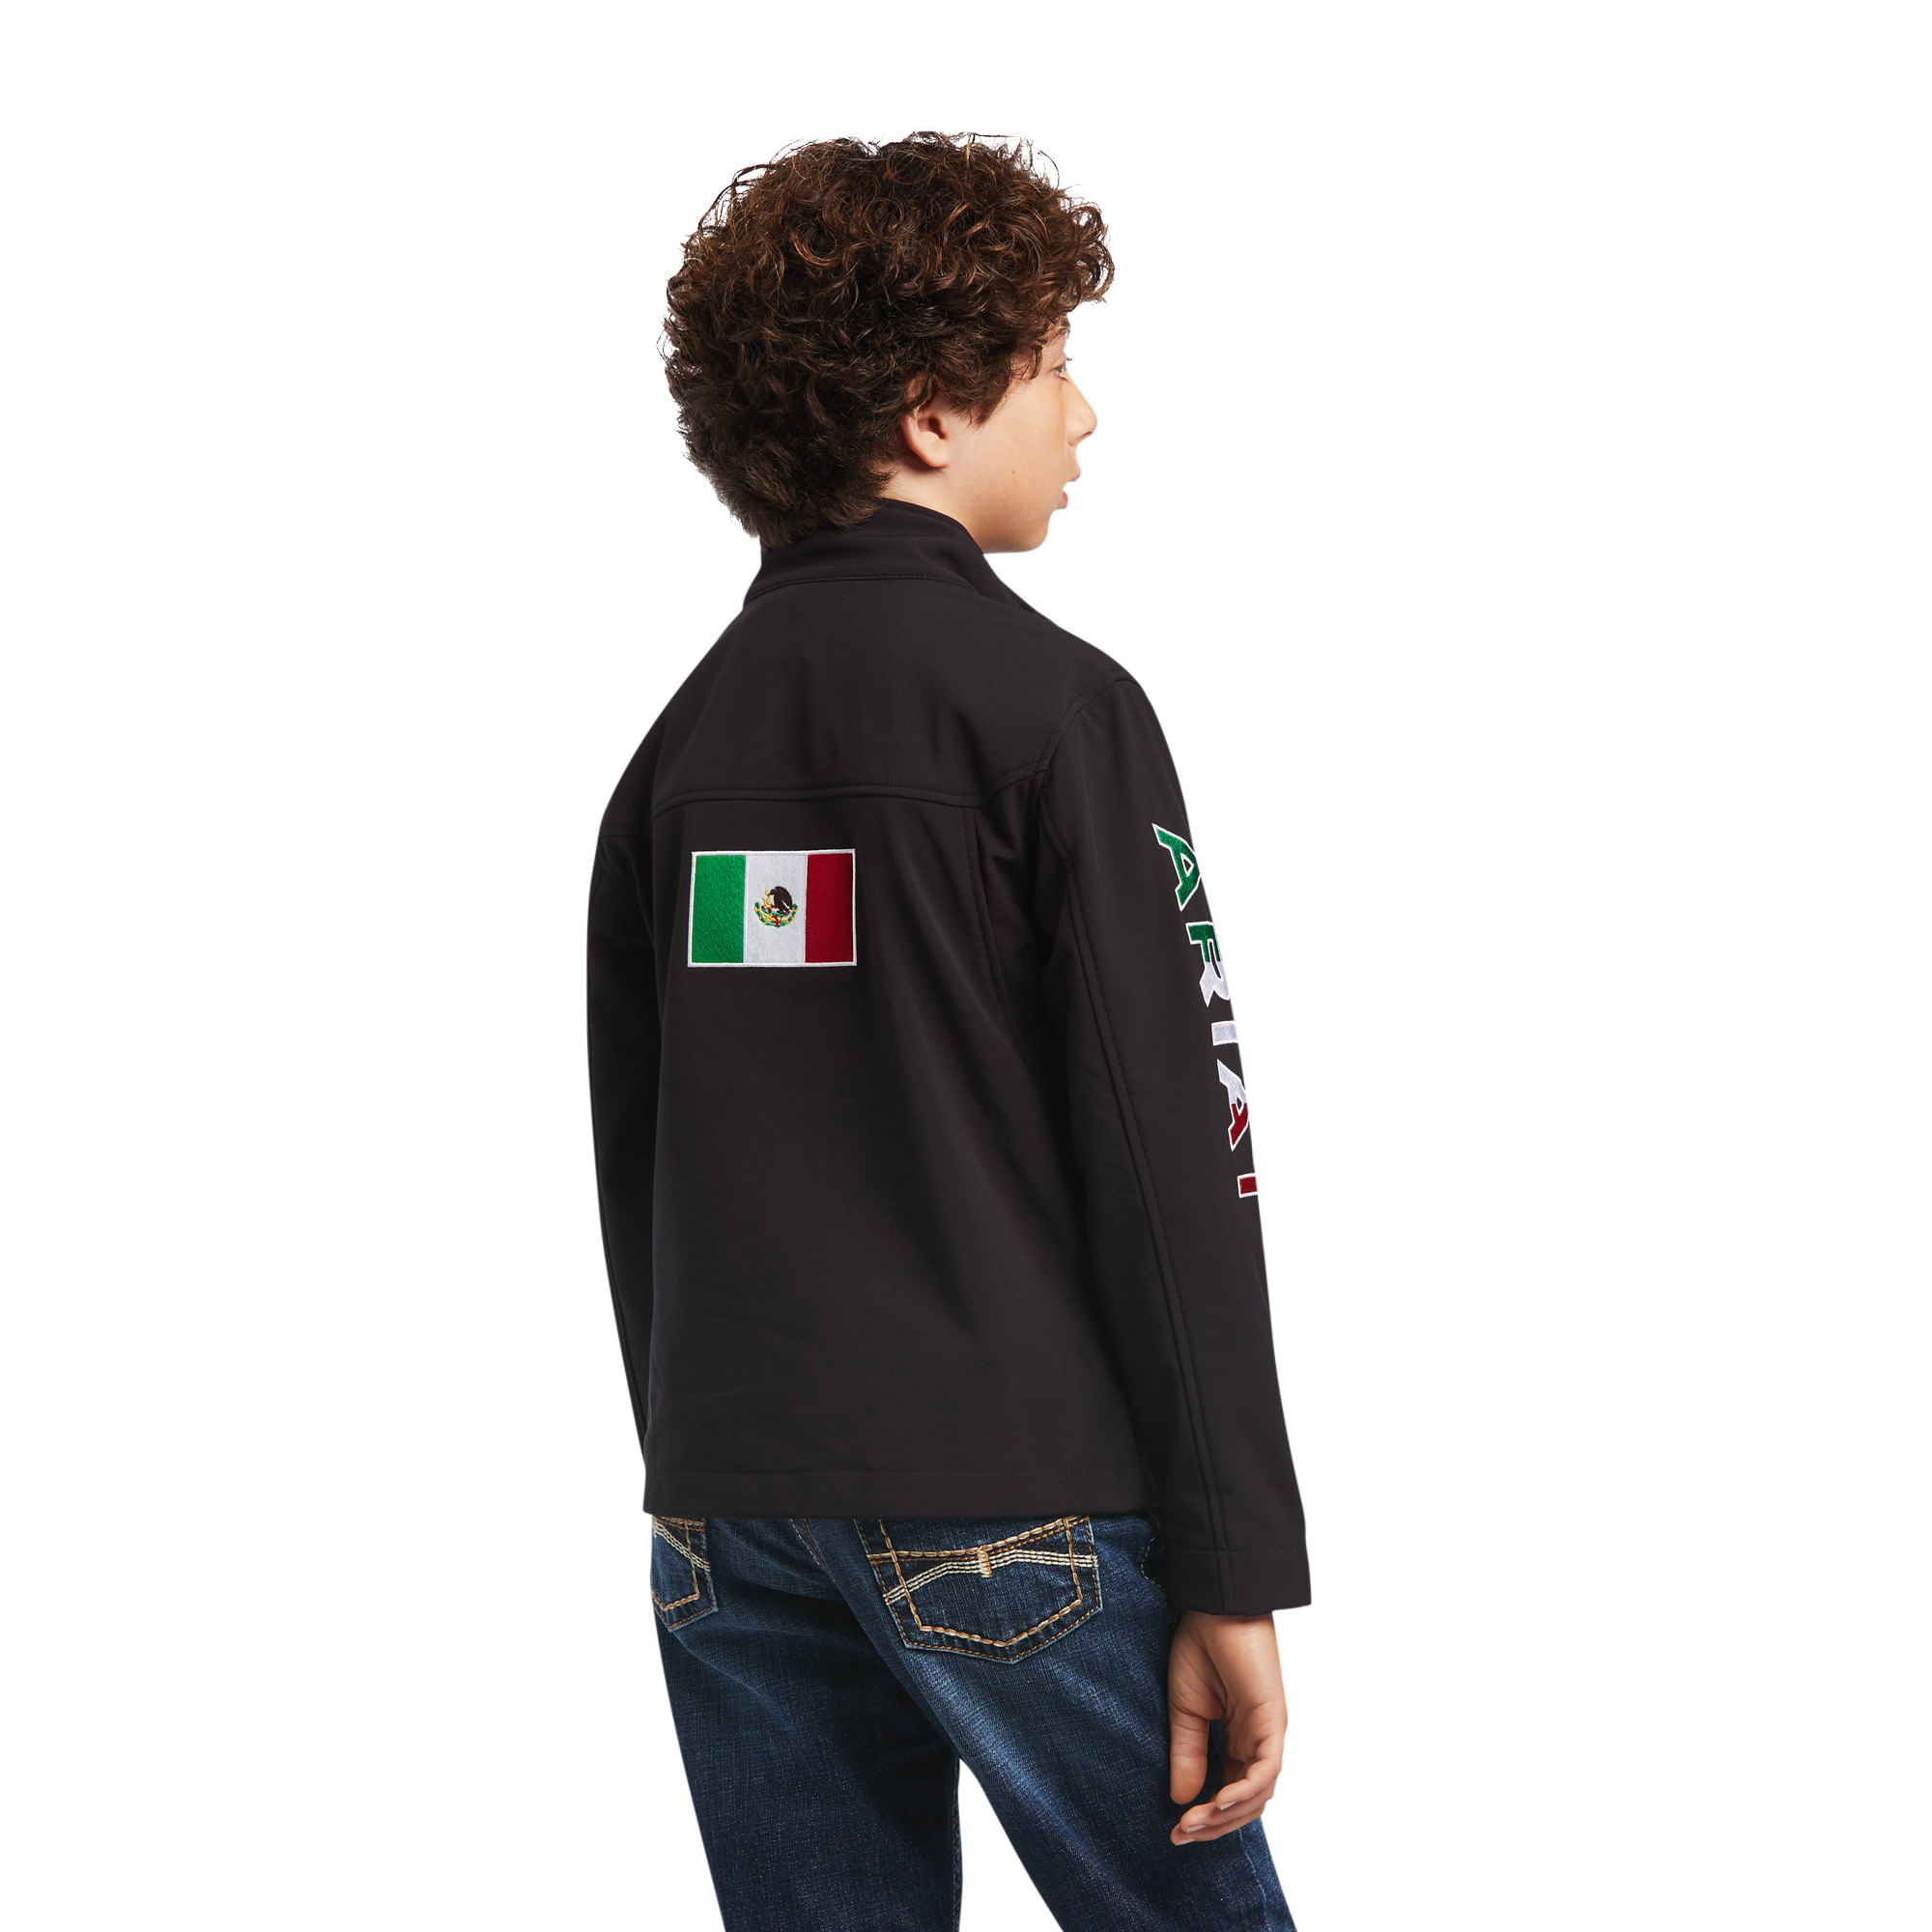 Ariat Boys New Team Softshell Mexico Jacket